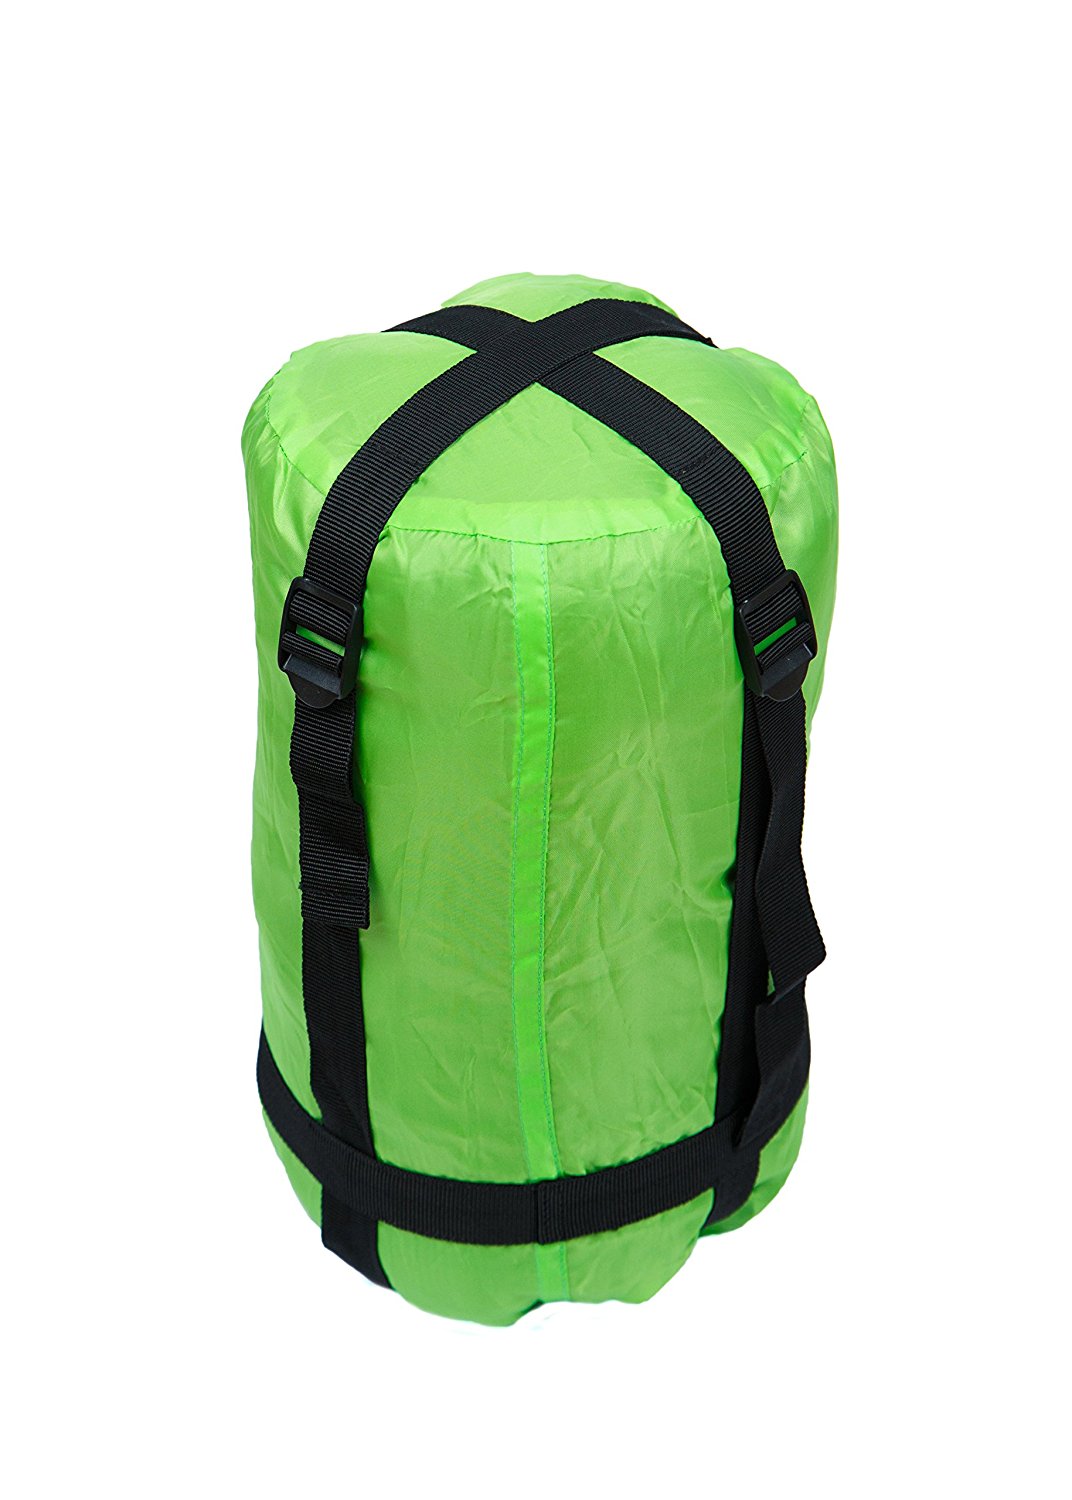 Compression Bag Green – RevalCamp